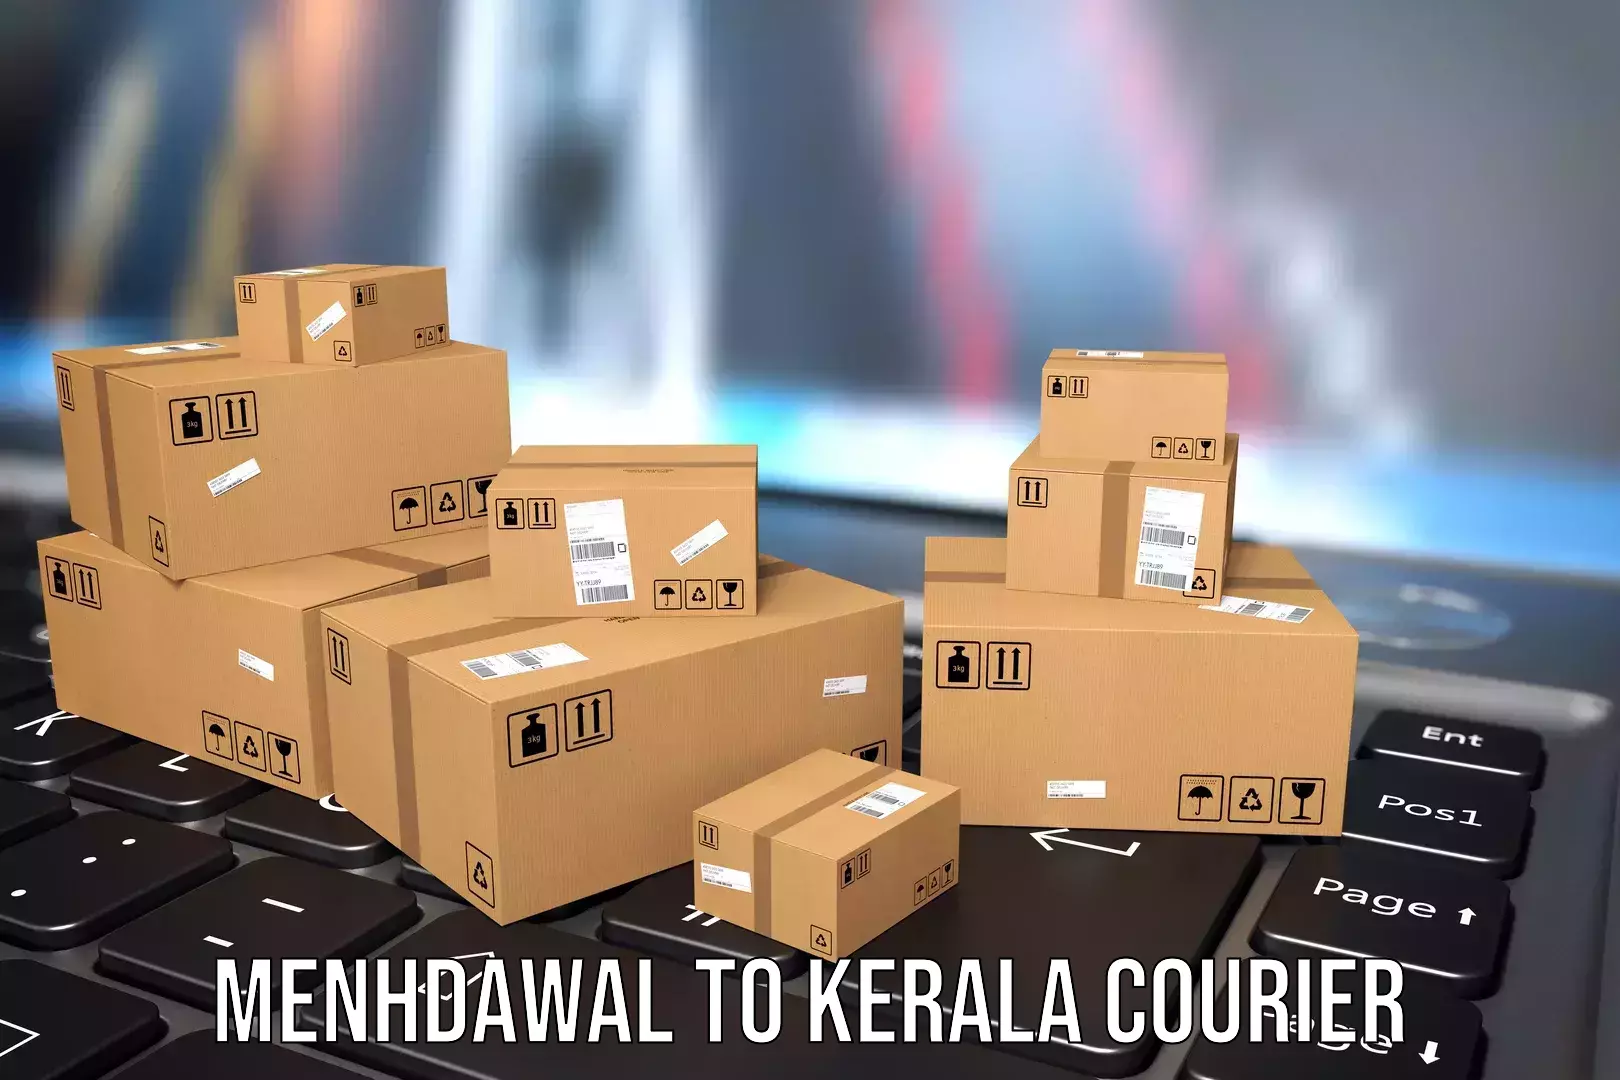 Group luggage shipping Menhdawal to Kerala